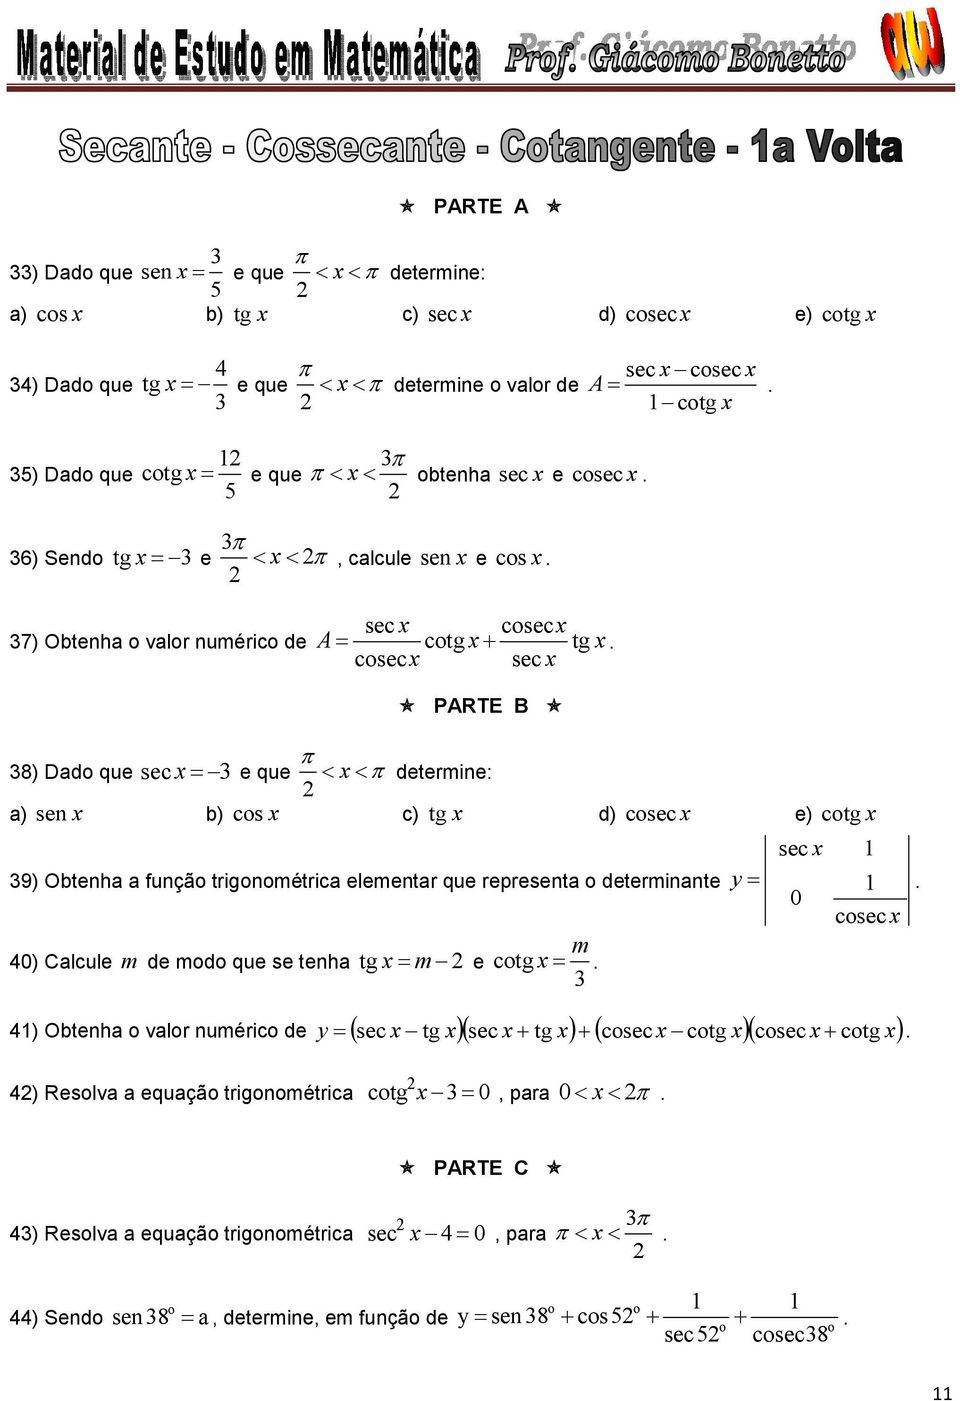 csec sec PARTE B 8) Dad que sec e que determine: a) sen b) cs c) tg d) csec e) ctg 9) Obtenha a funçã trignmétrica elementar que representa determinante 0) Calcule m de